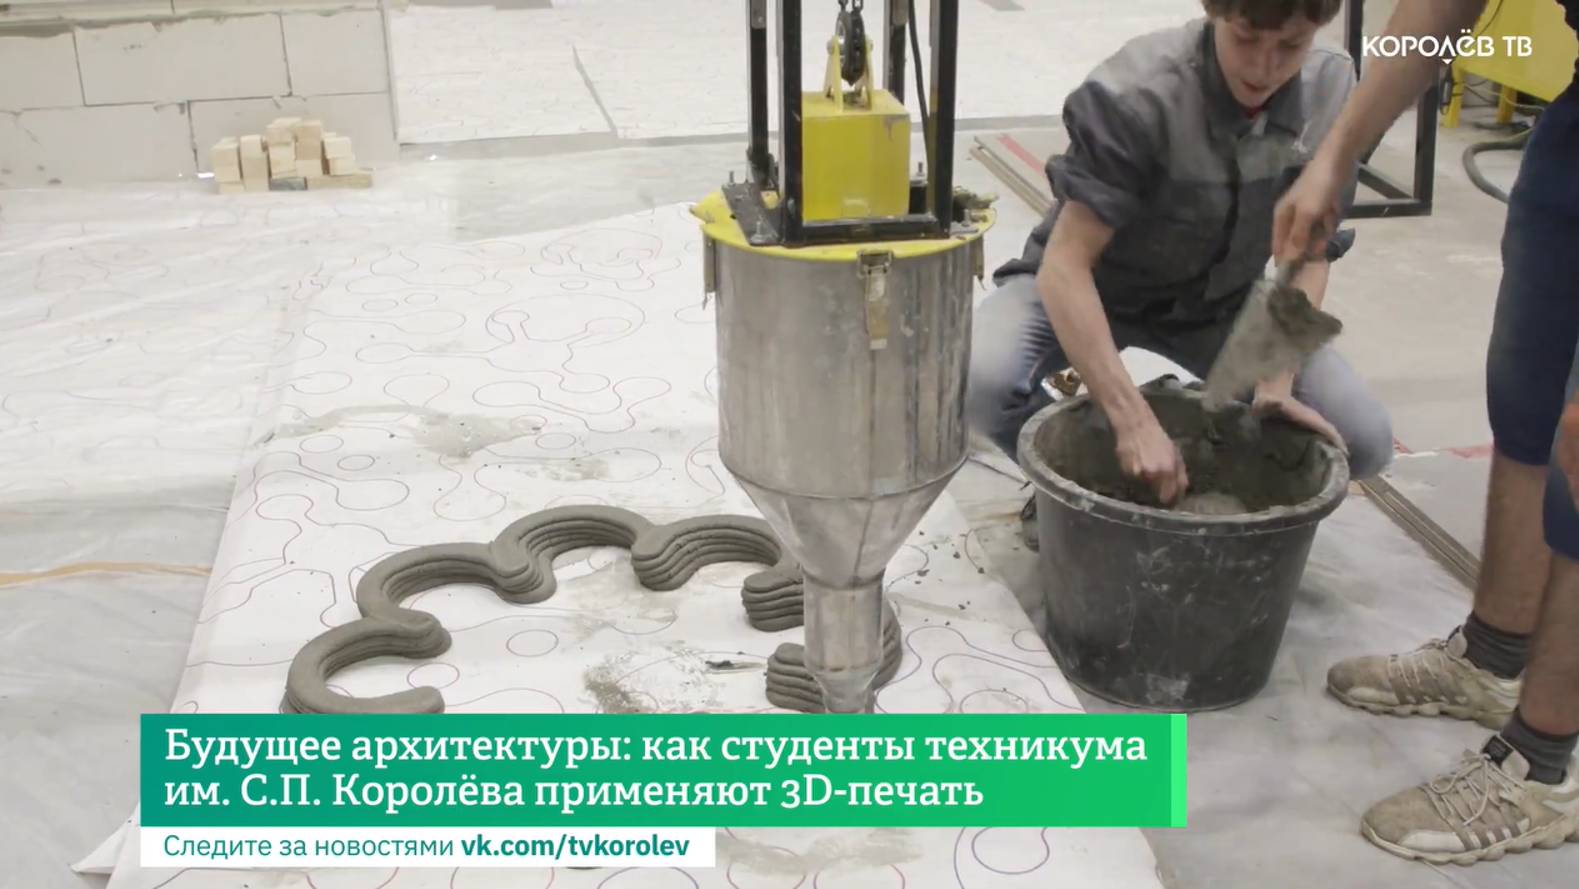 Будущее архитектуры: как студенты техникума им. С.П. Королёва применяют 3D-печать